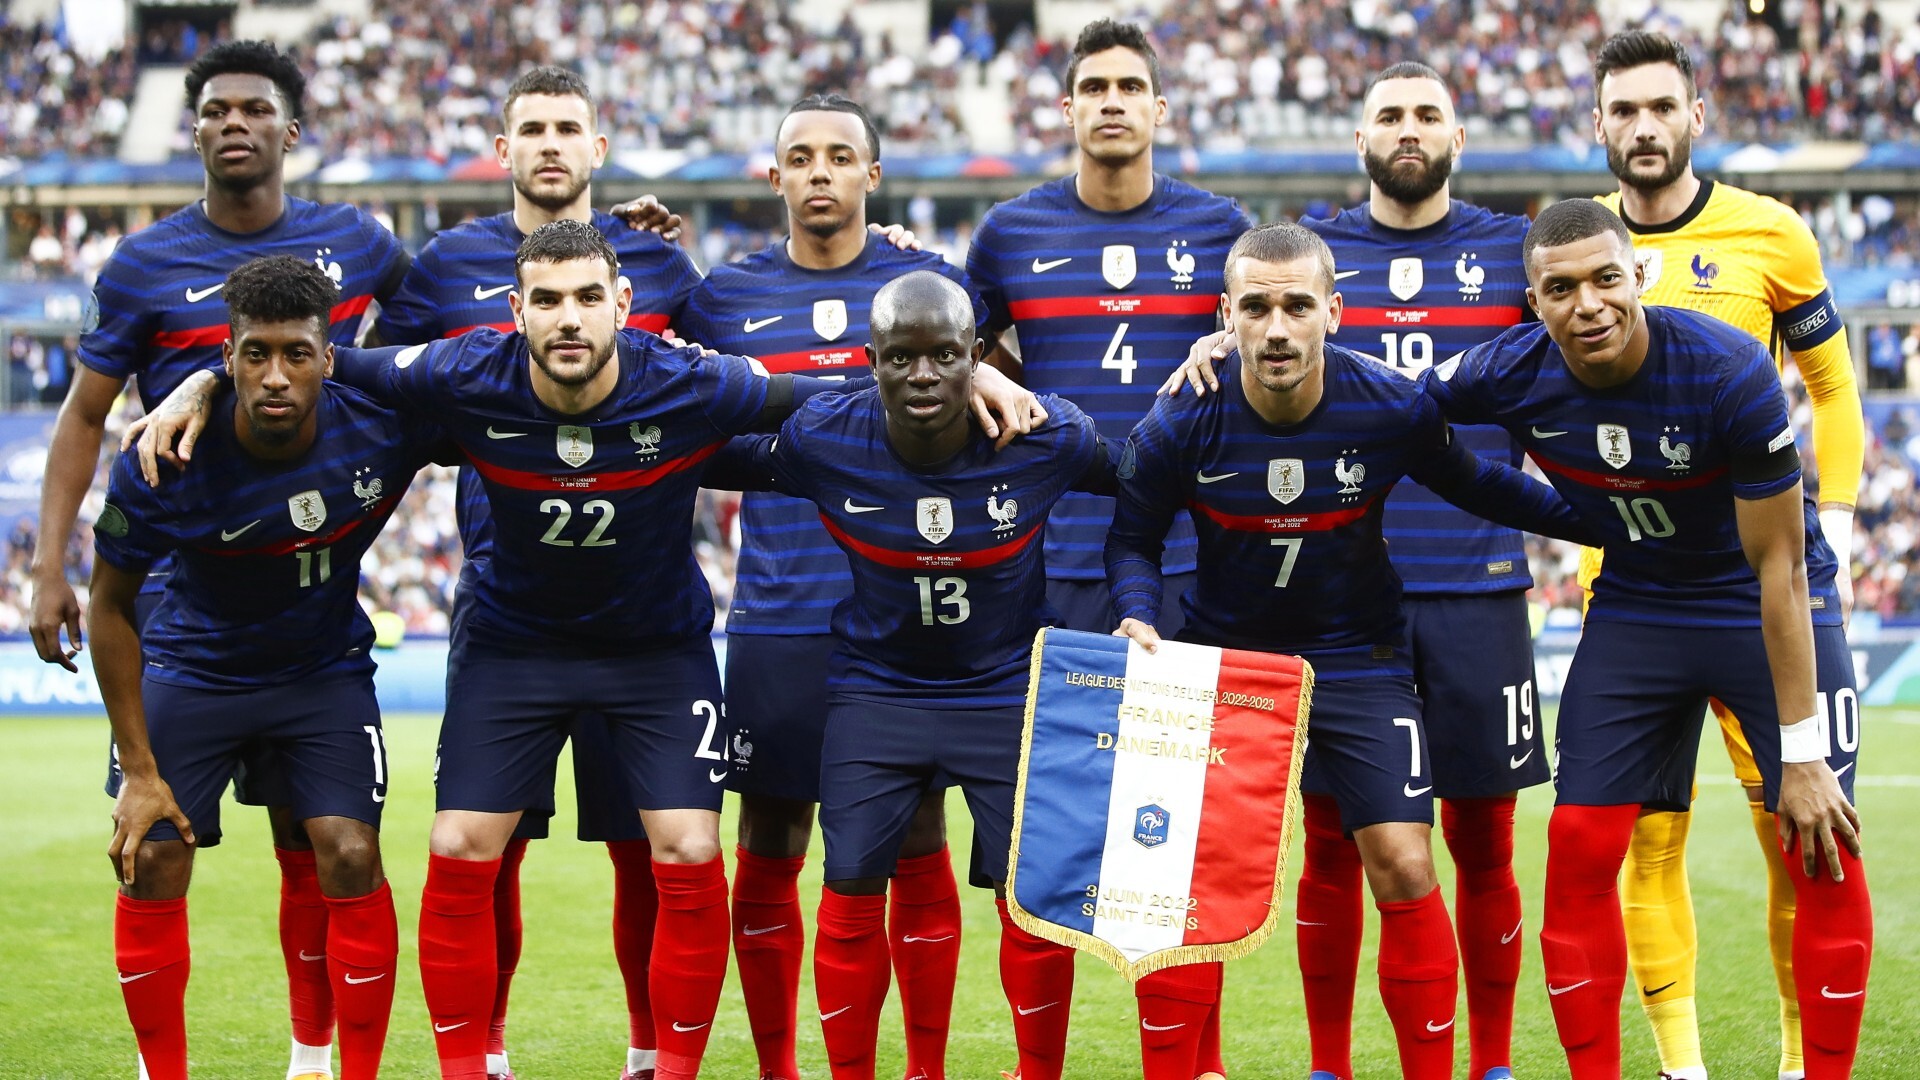 equipo de fútbol de francia